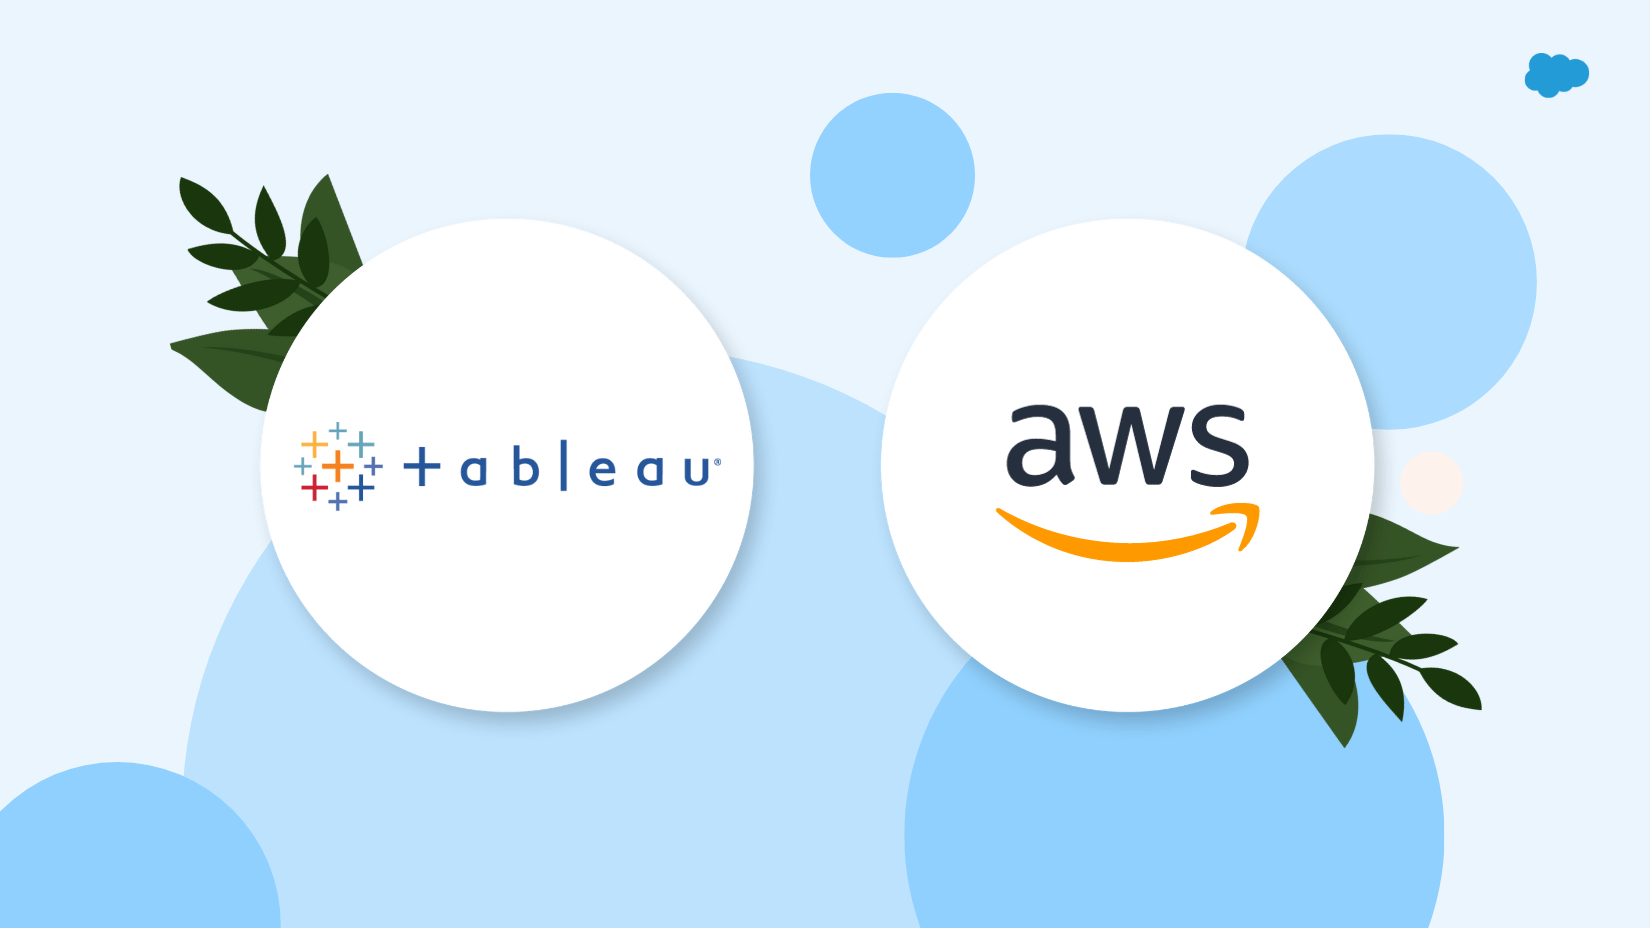 Tableau-Logo und AWS-Logo vor hellblauen Kreisen